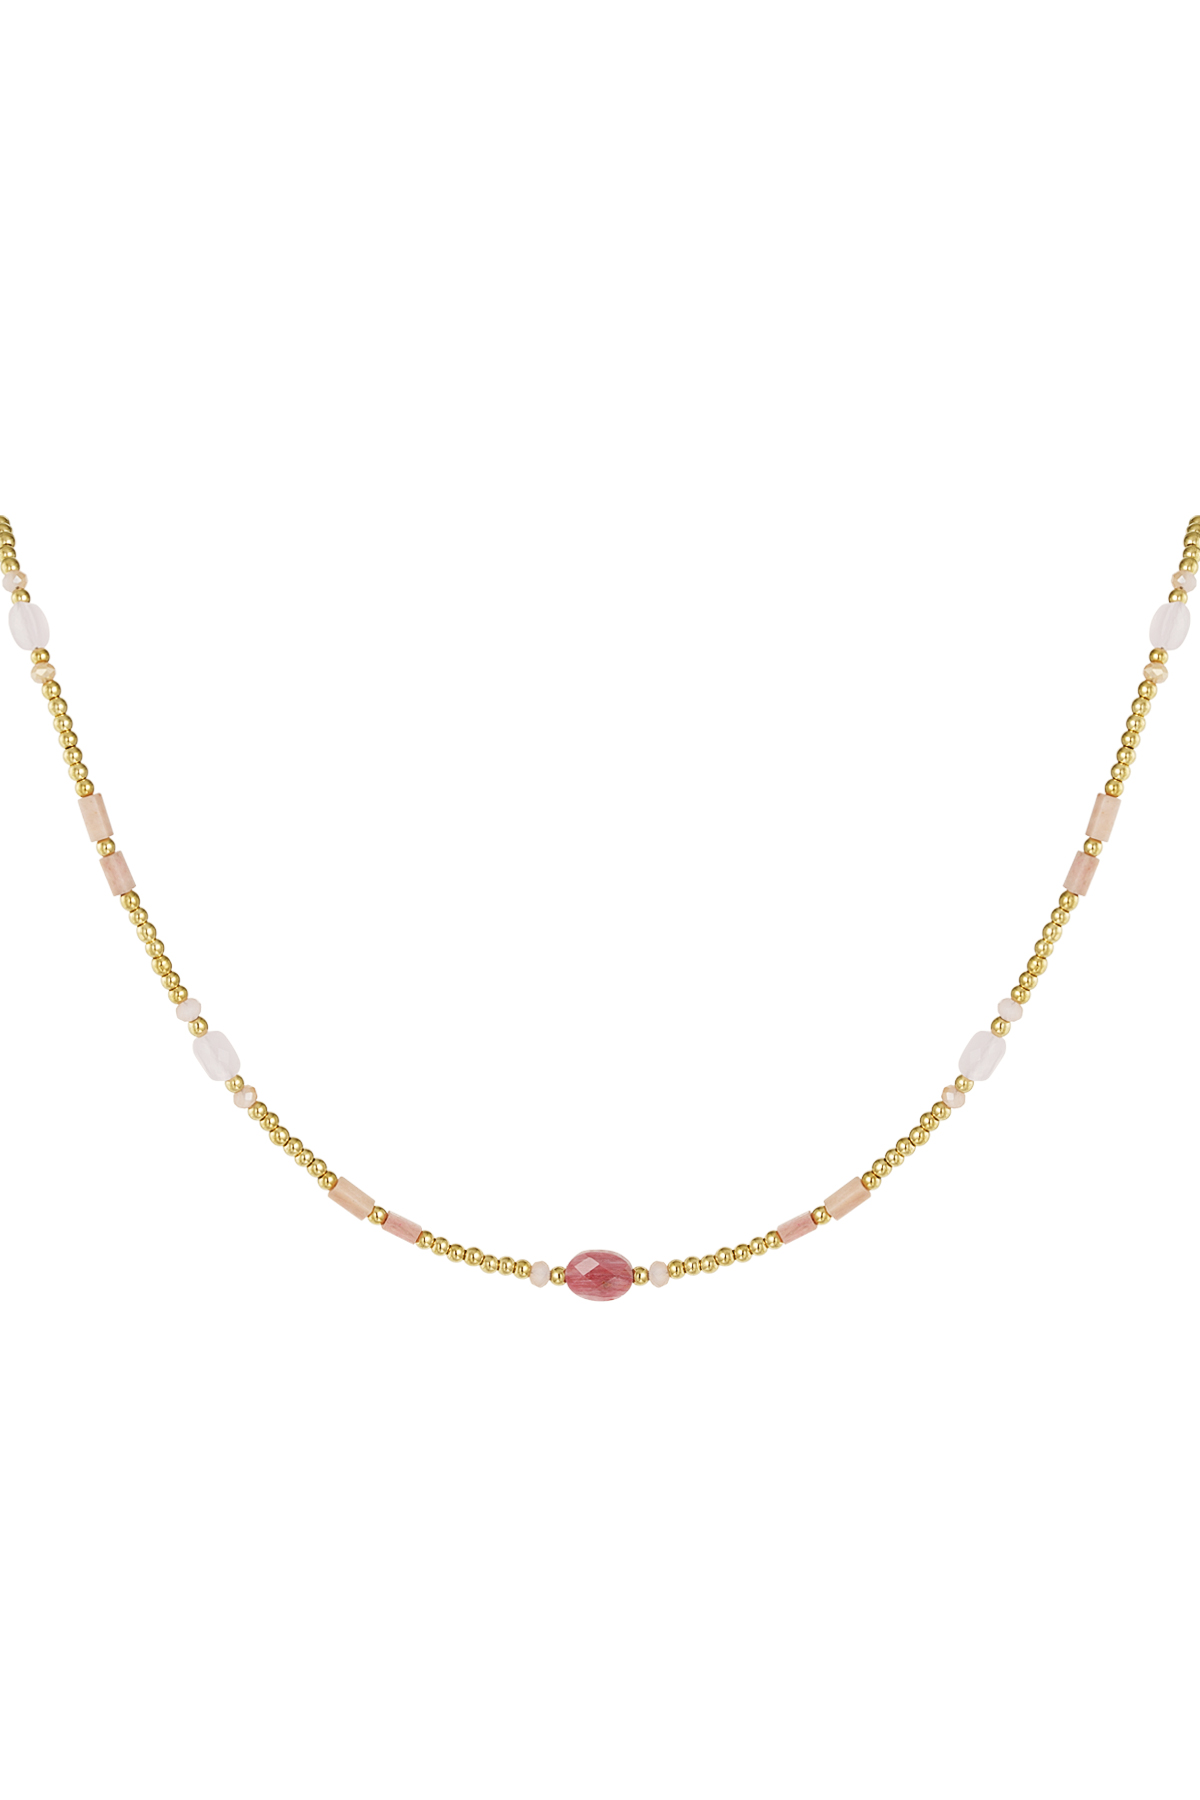 Perlenkette mit bunten Details - Edelstahl in Rosa und Gold